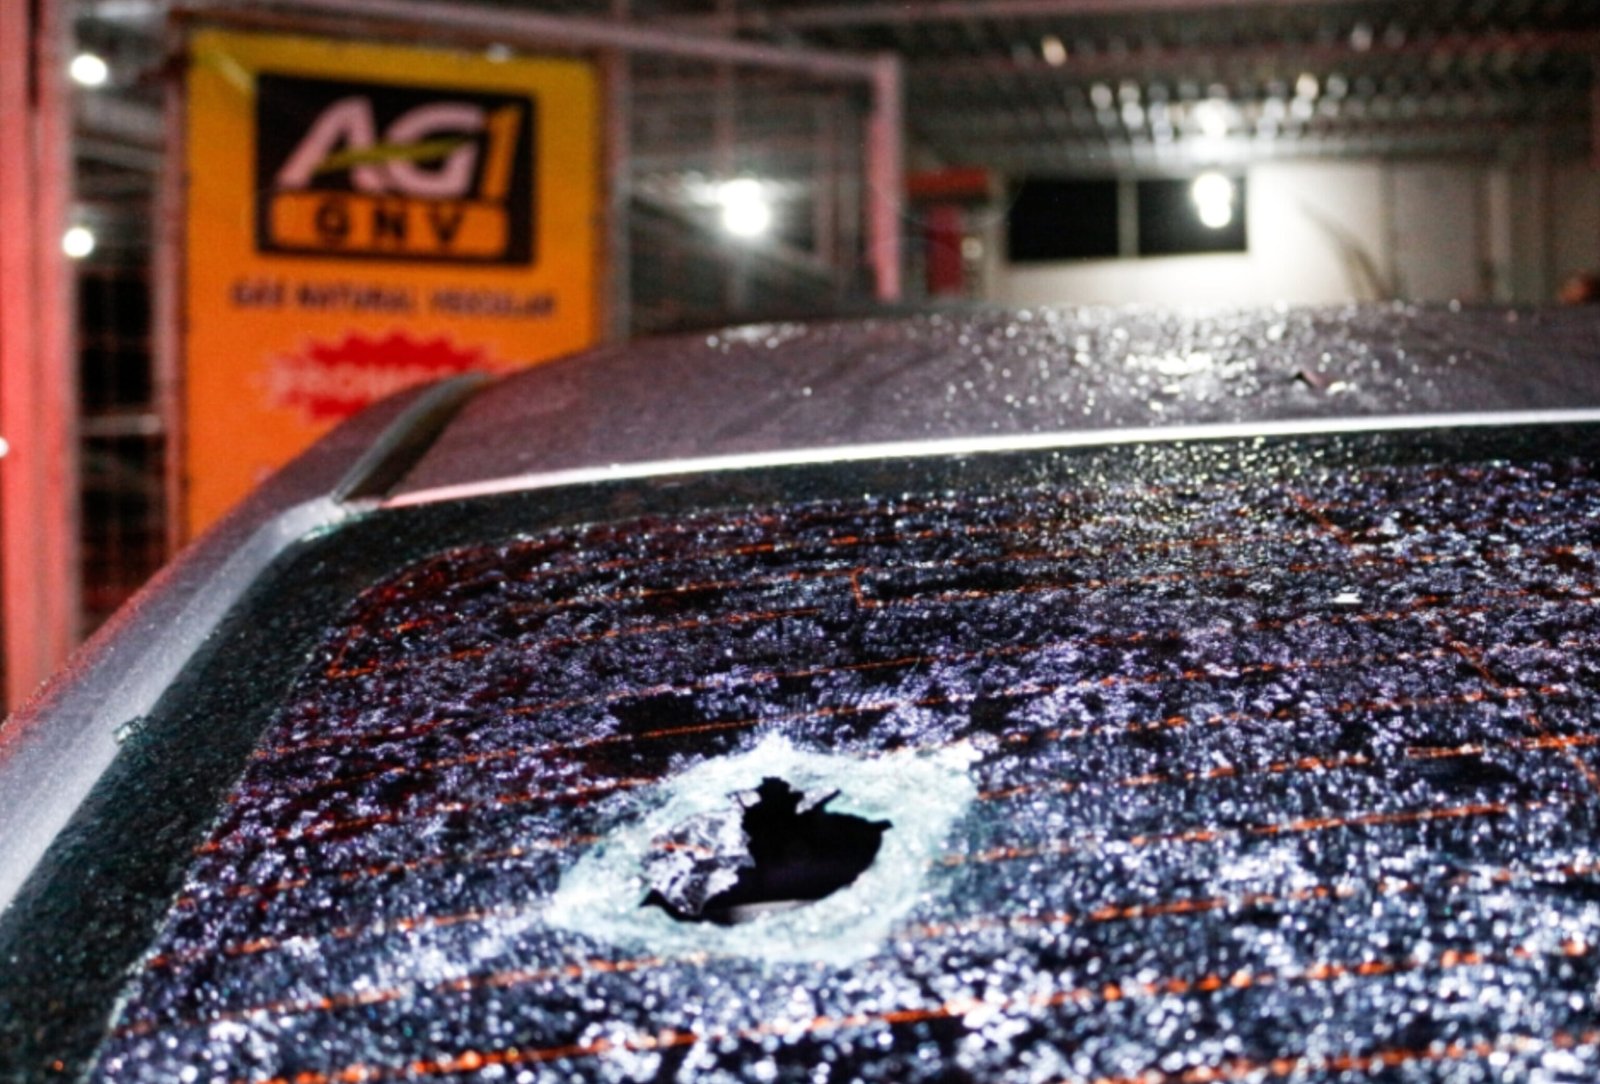 Ataque a tiros dentro de loja deixa dois mortos em São Gonçalo